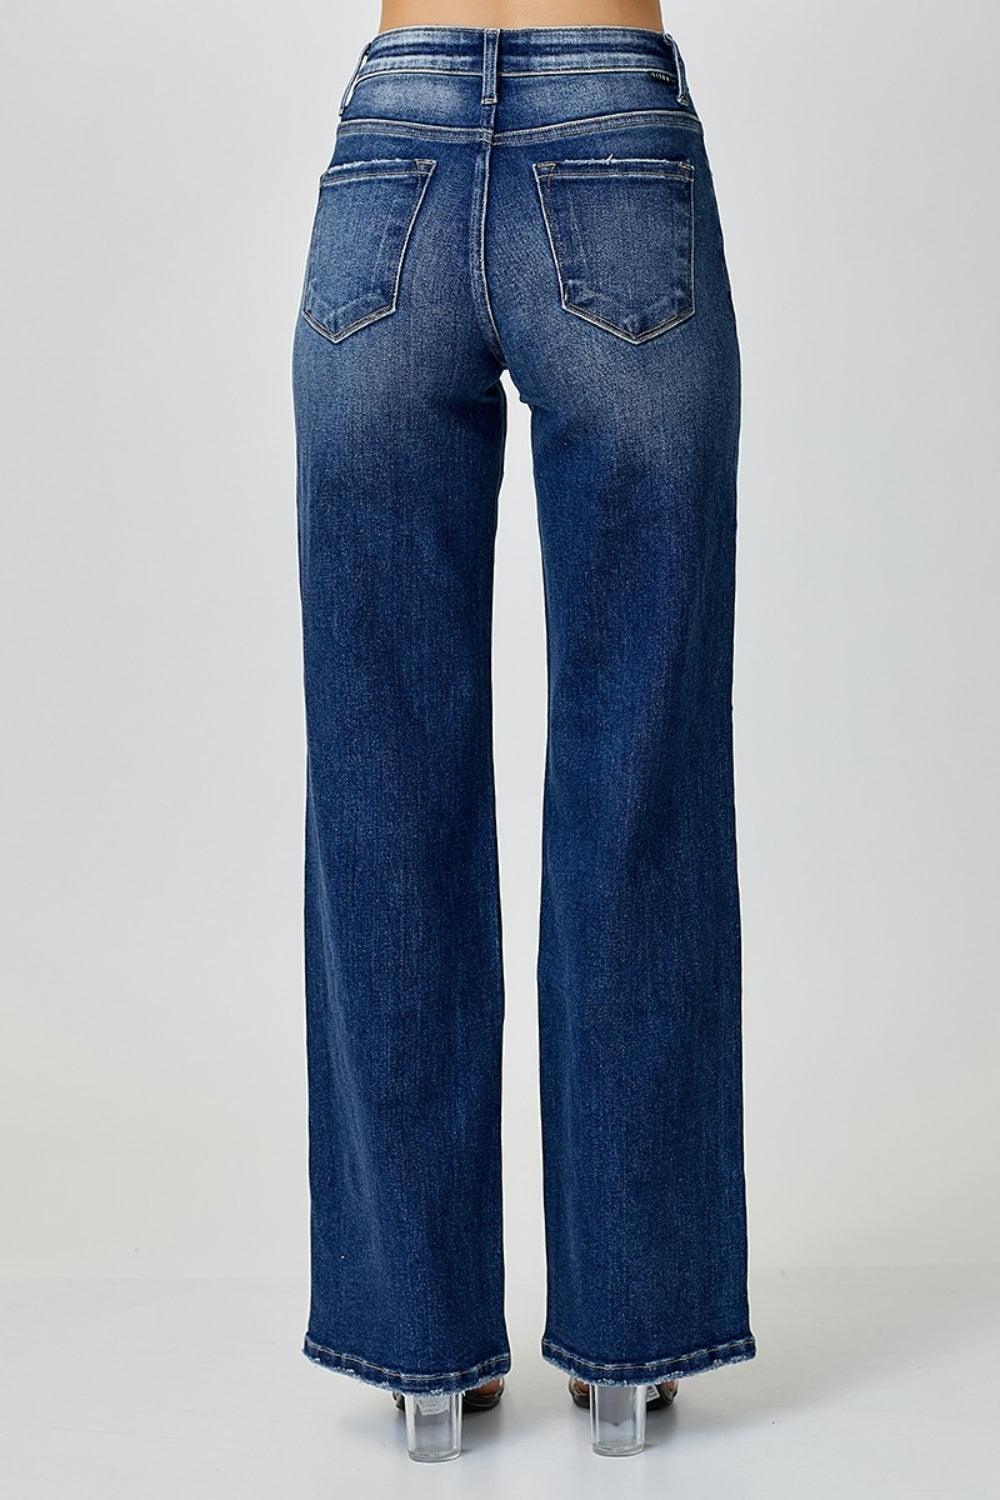 RISEN Mid Rise Straight Jeans - Jessiz Boutique